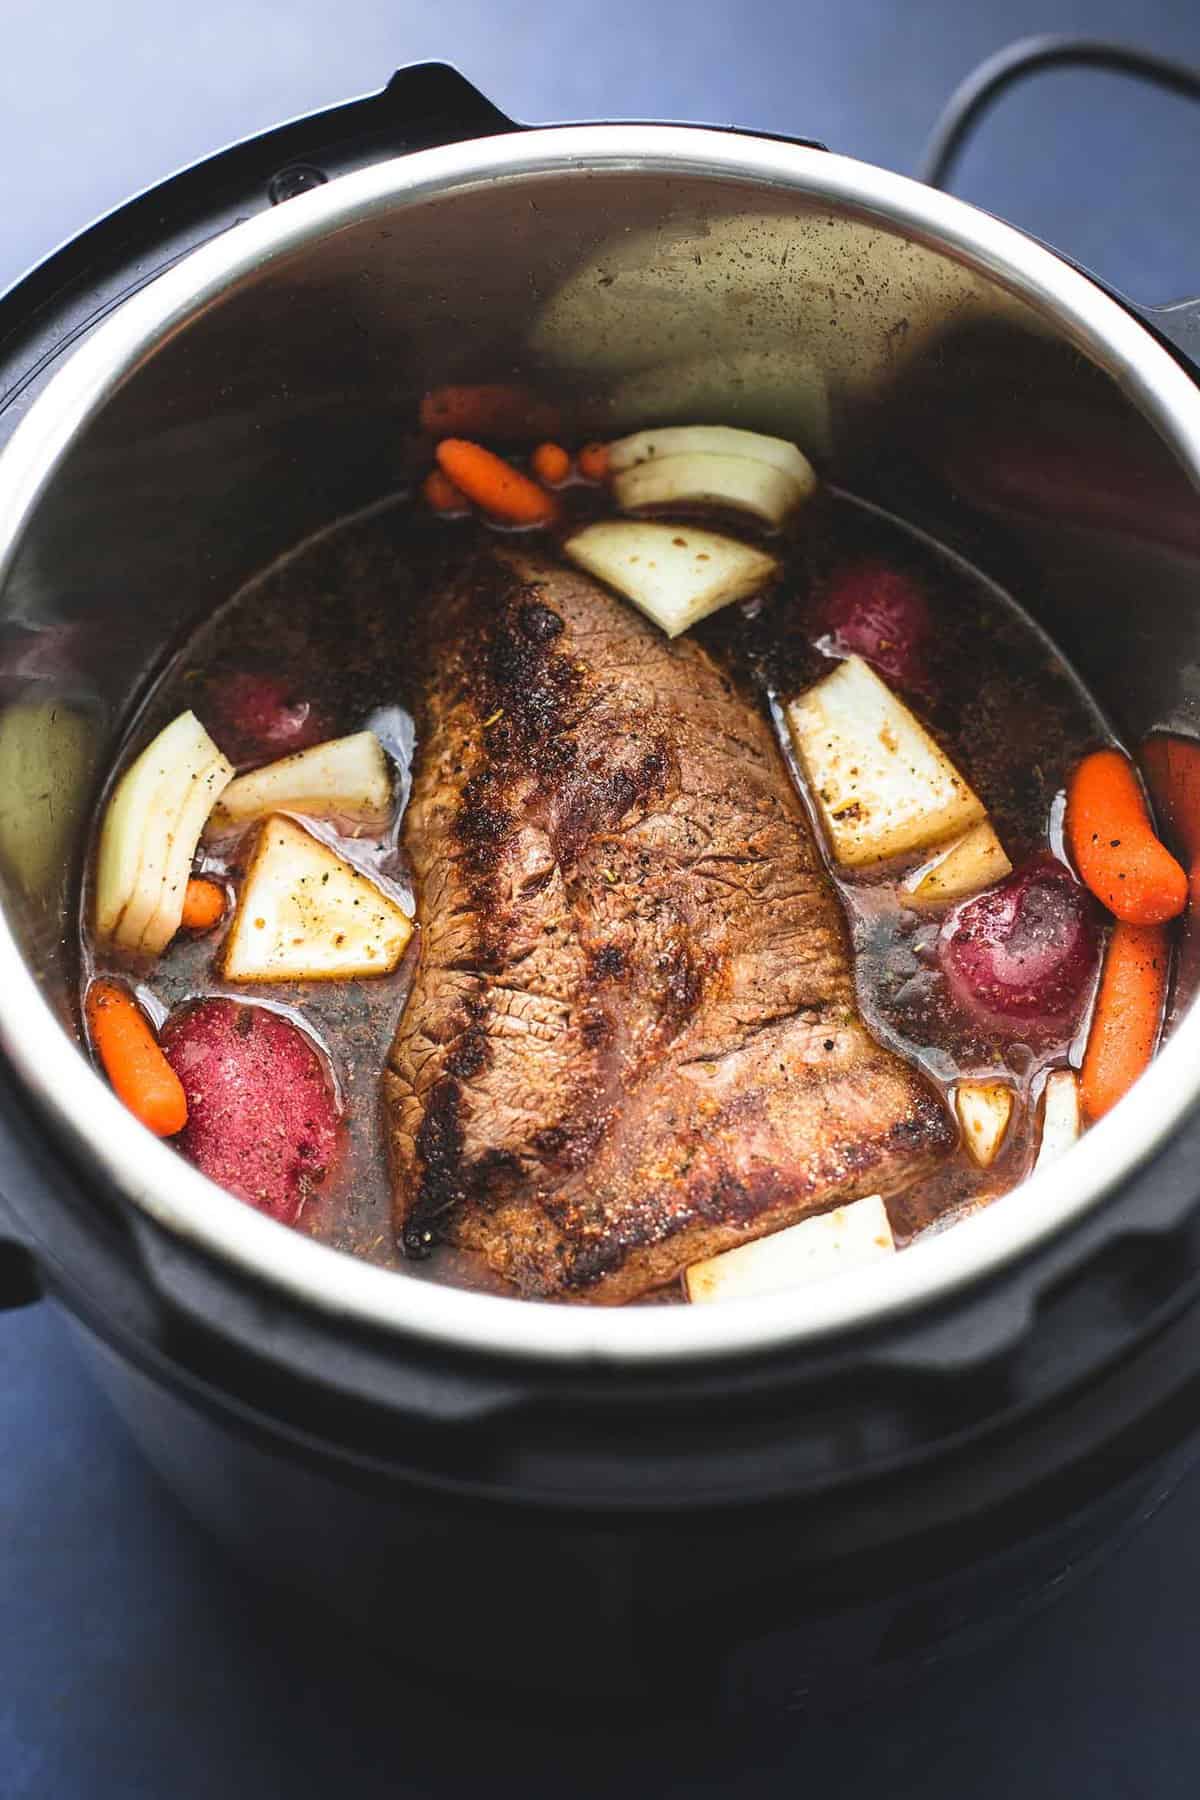 Pot Roast 101: How to Cook Pot Roast